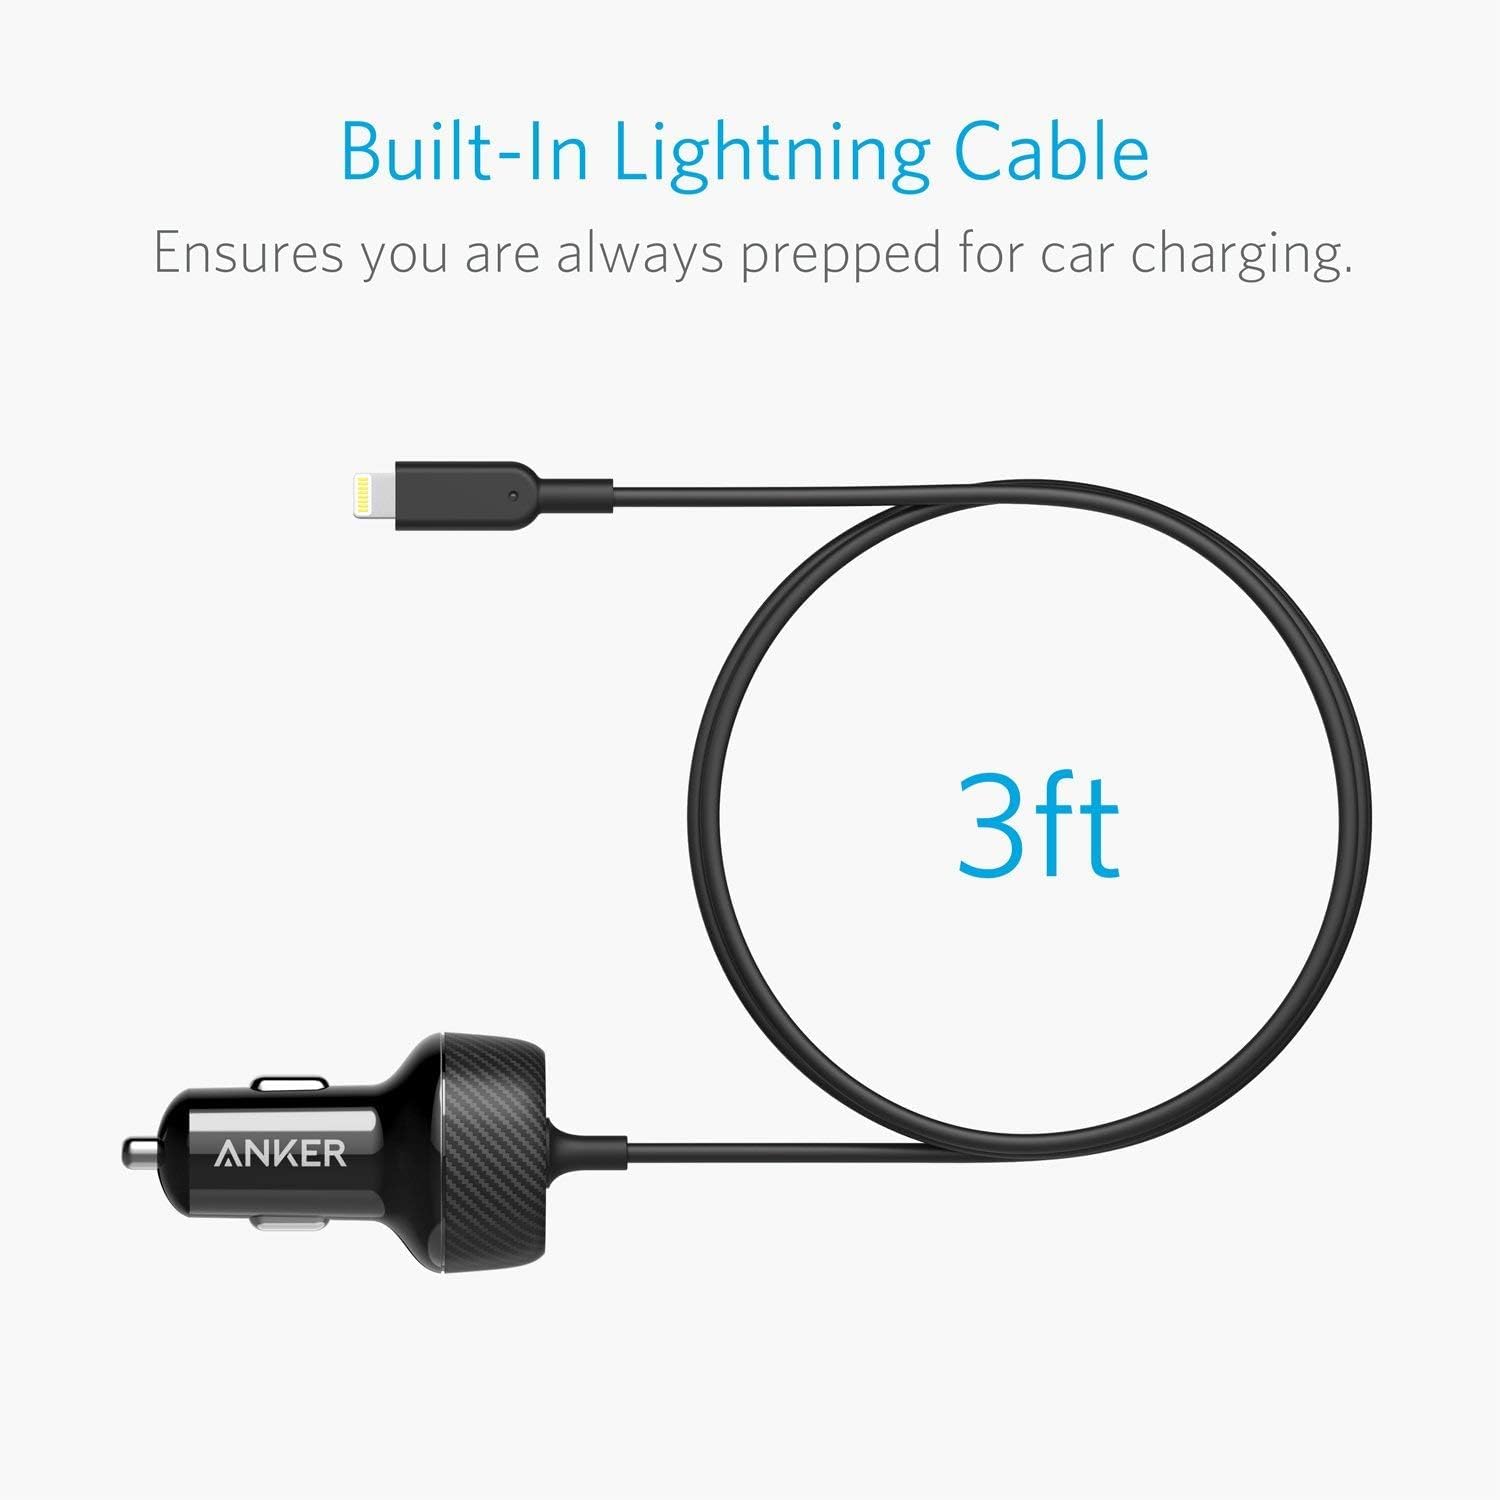 מטען רכב וכבל לאייפון 0.9 מטר Anker Elite USB Port+Lightning Cable 24W - אחריות לשנה ע"י יבואן רשמי